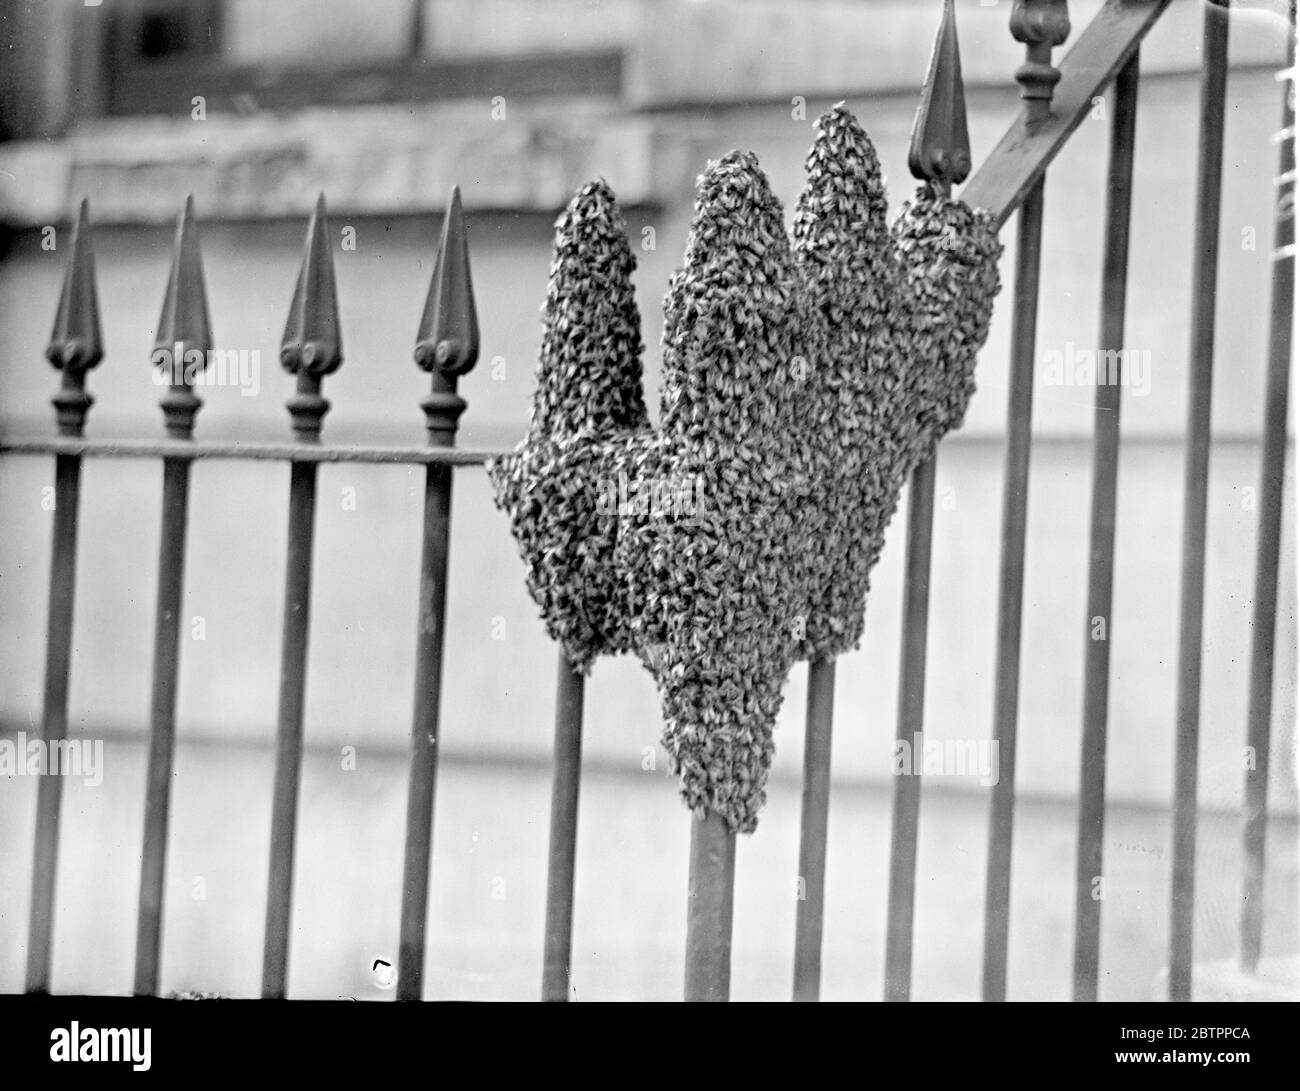 La main de la nature, l'arnaque des abeilles s'installe dans London Street. L'effet curieux presque en forme de main humaine, donné par essaim d'abeilles, qui s'est installé sur les rails d'une maison dans la rue Raphaël, Knightsbridge. L'essaim a séjourné plusieurs heures sur les rails jusqu'à ce que M. T King, de la division de Wimbledon de l'Association des apiculteurs, tente de les sauver et de les retirer. 3 août 1938 Banque D'Images